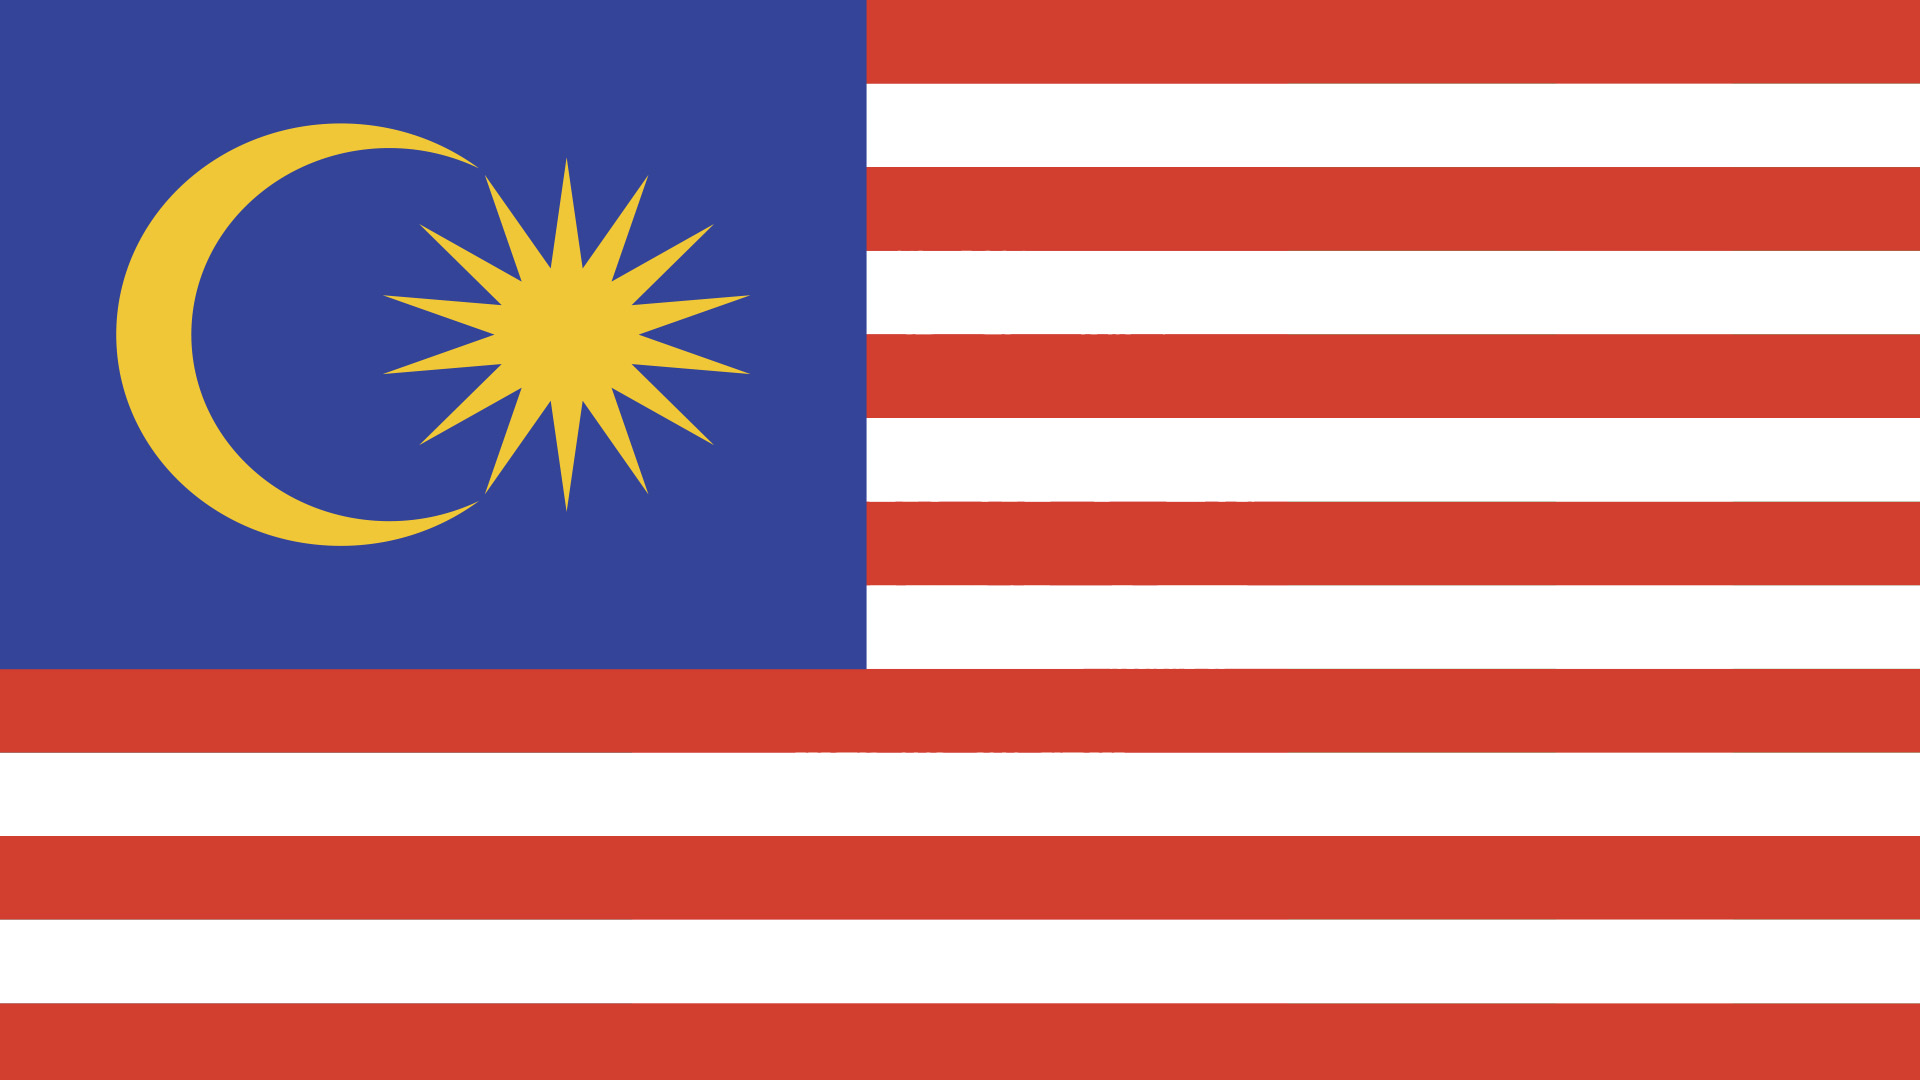 Flag-mented Asia! Quiz